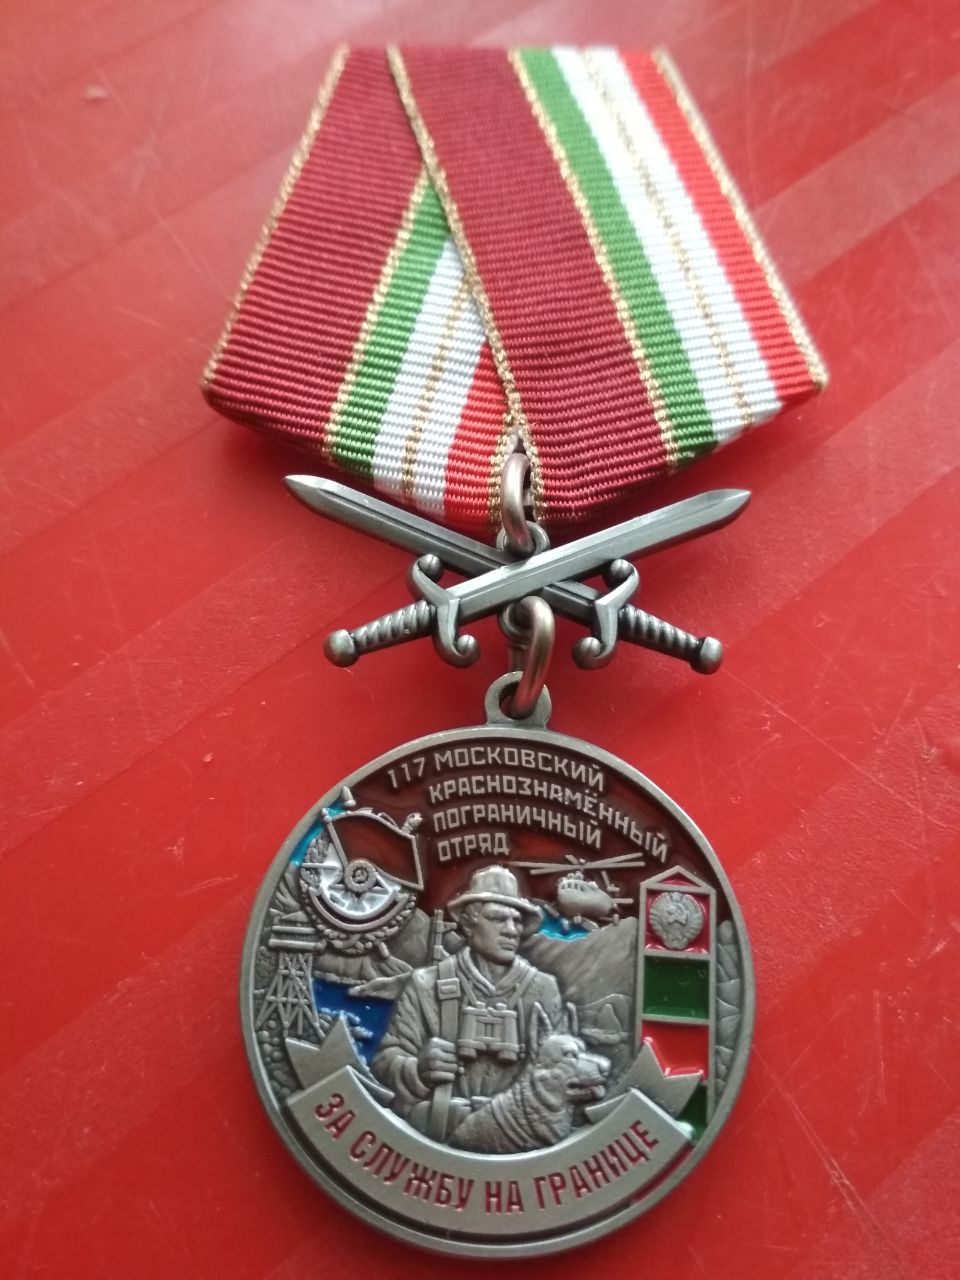 Медаль "За службу на границе. 117 Московский краснознаменный пограничный отряд"